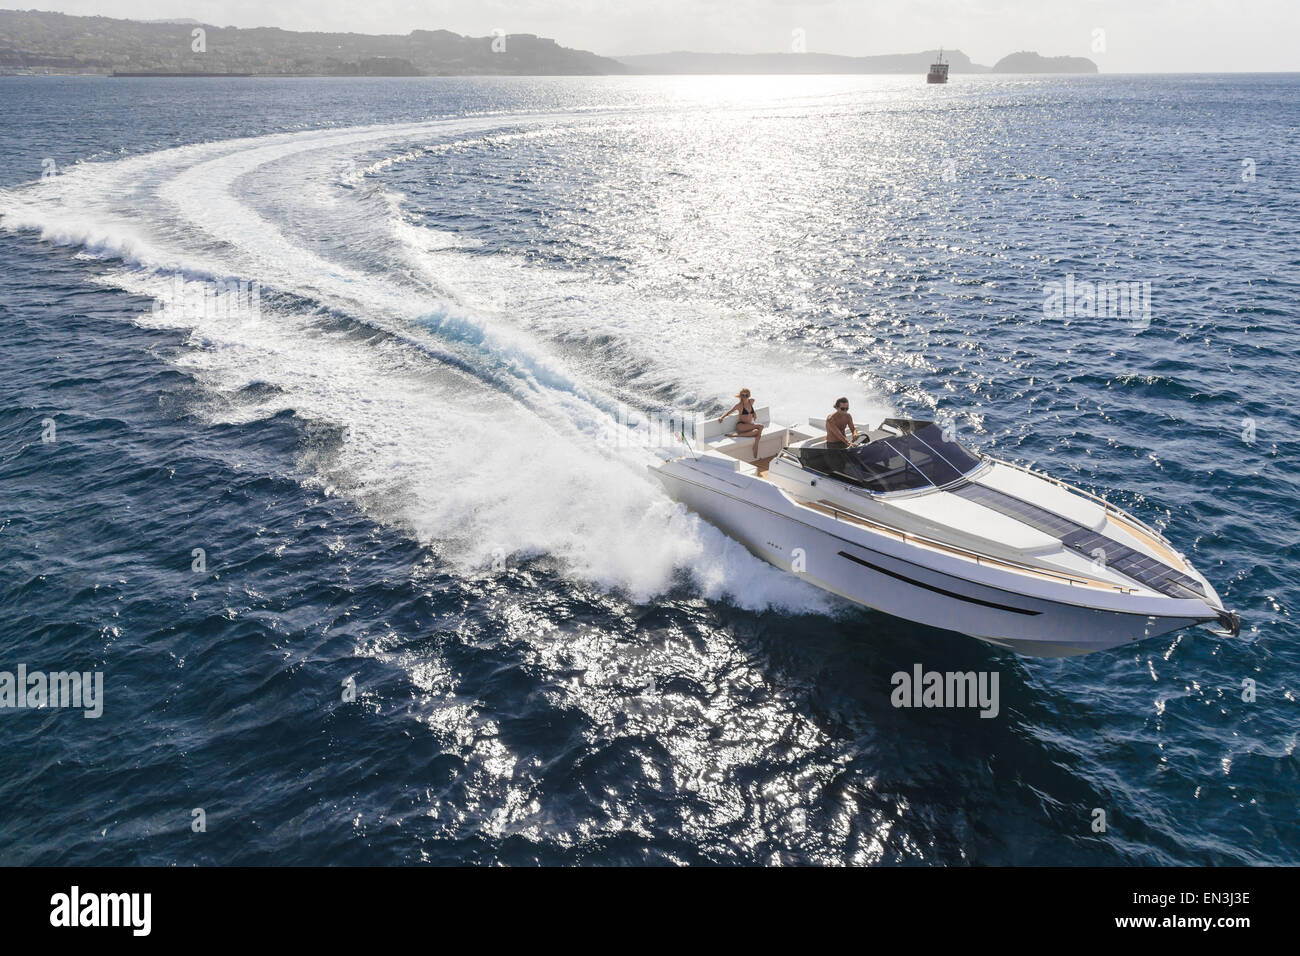 motor boat in navigation Stock Photo